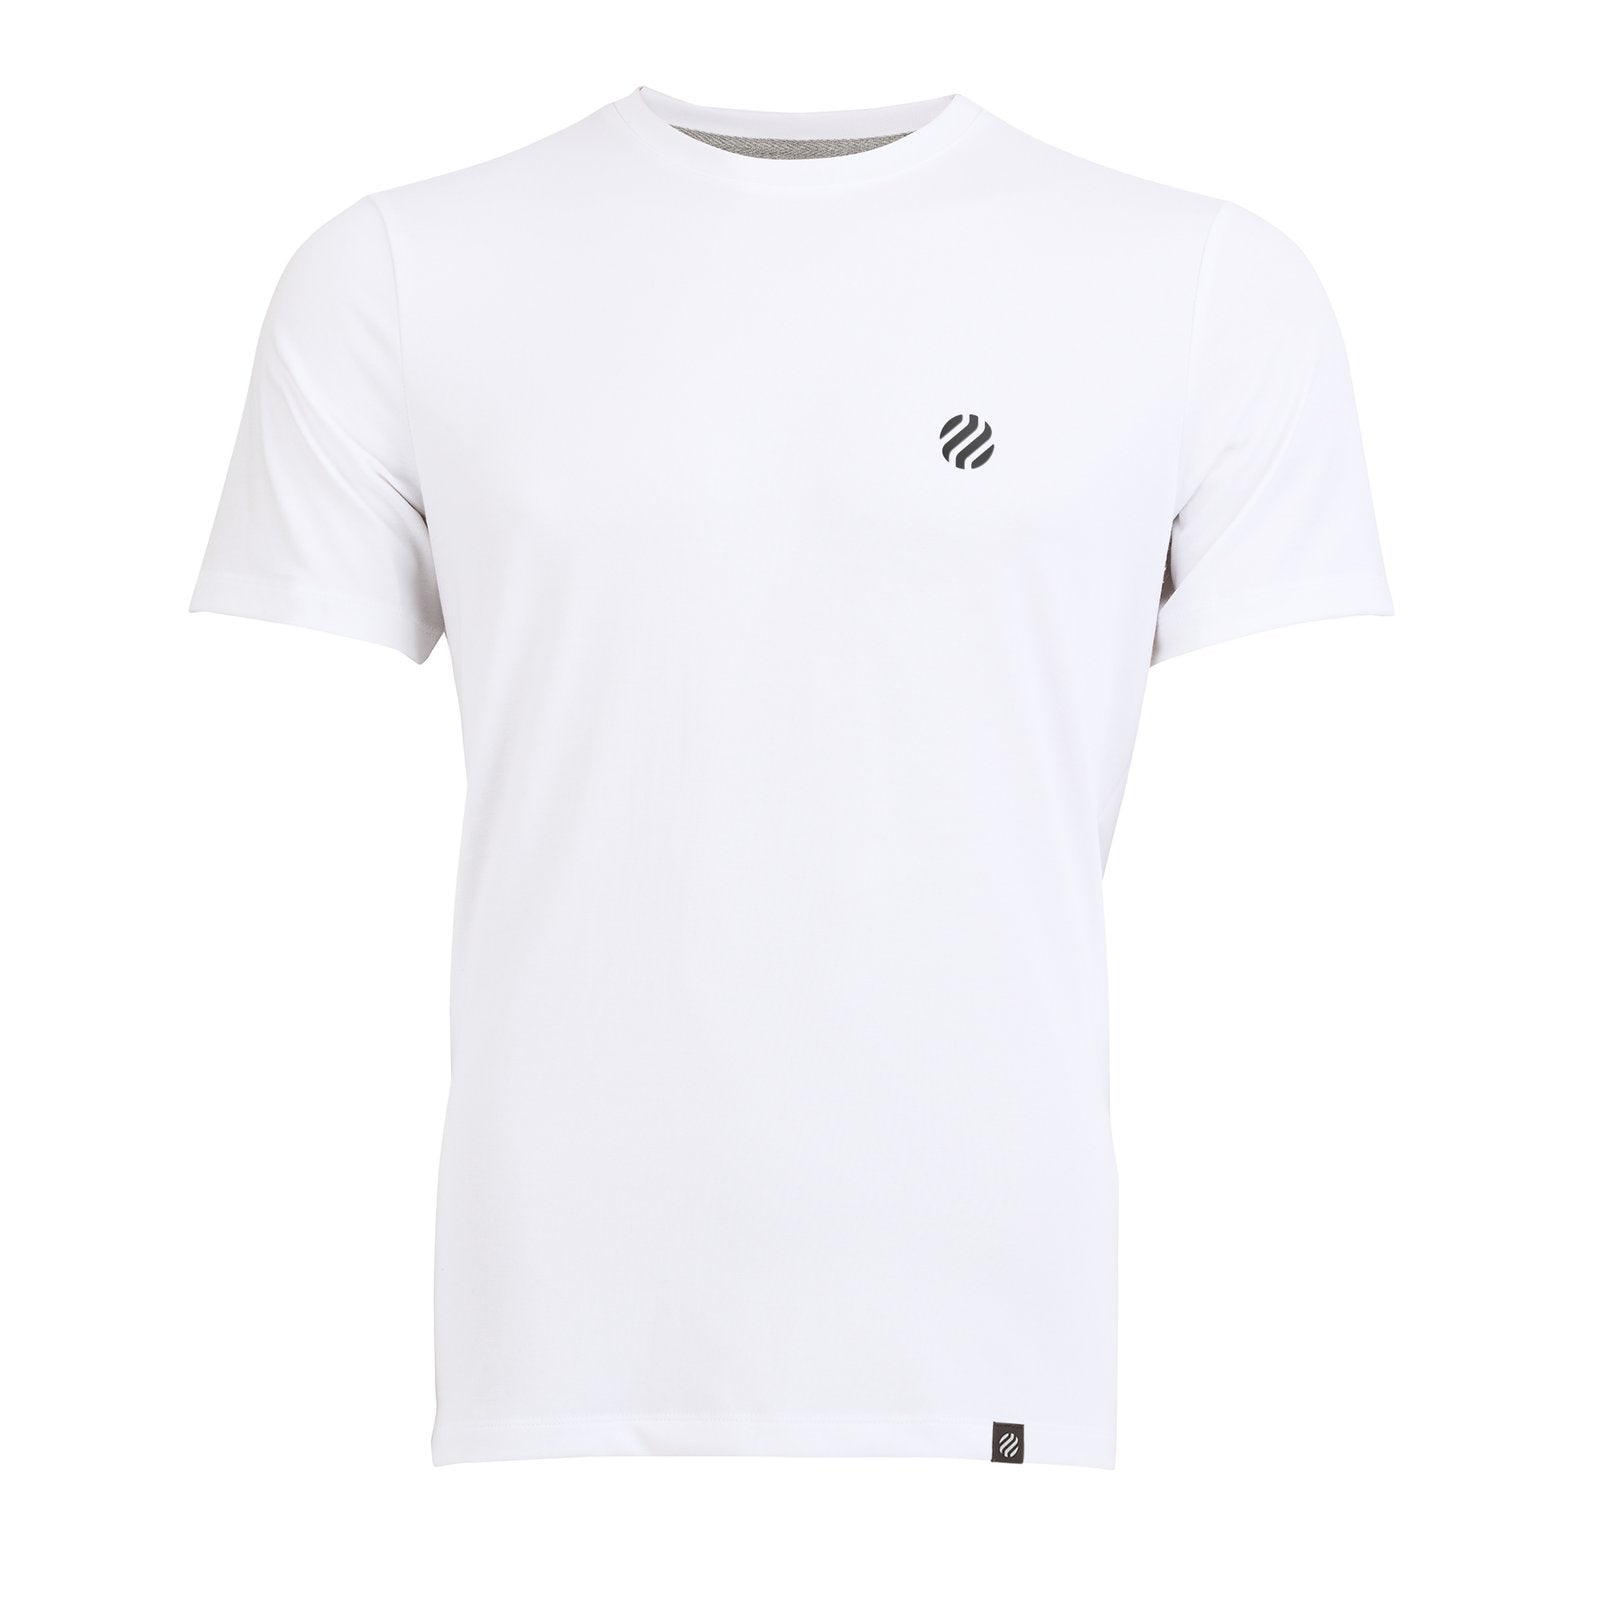 COOLEVER T-Shirt reflective Logo Ball, weiß